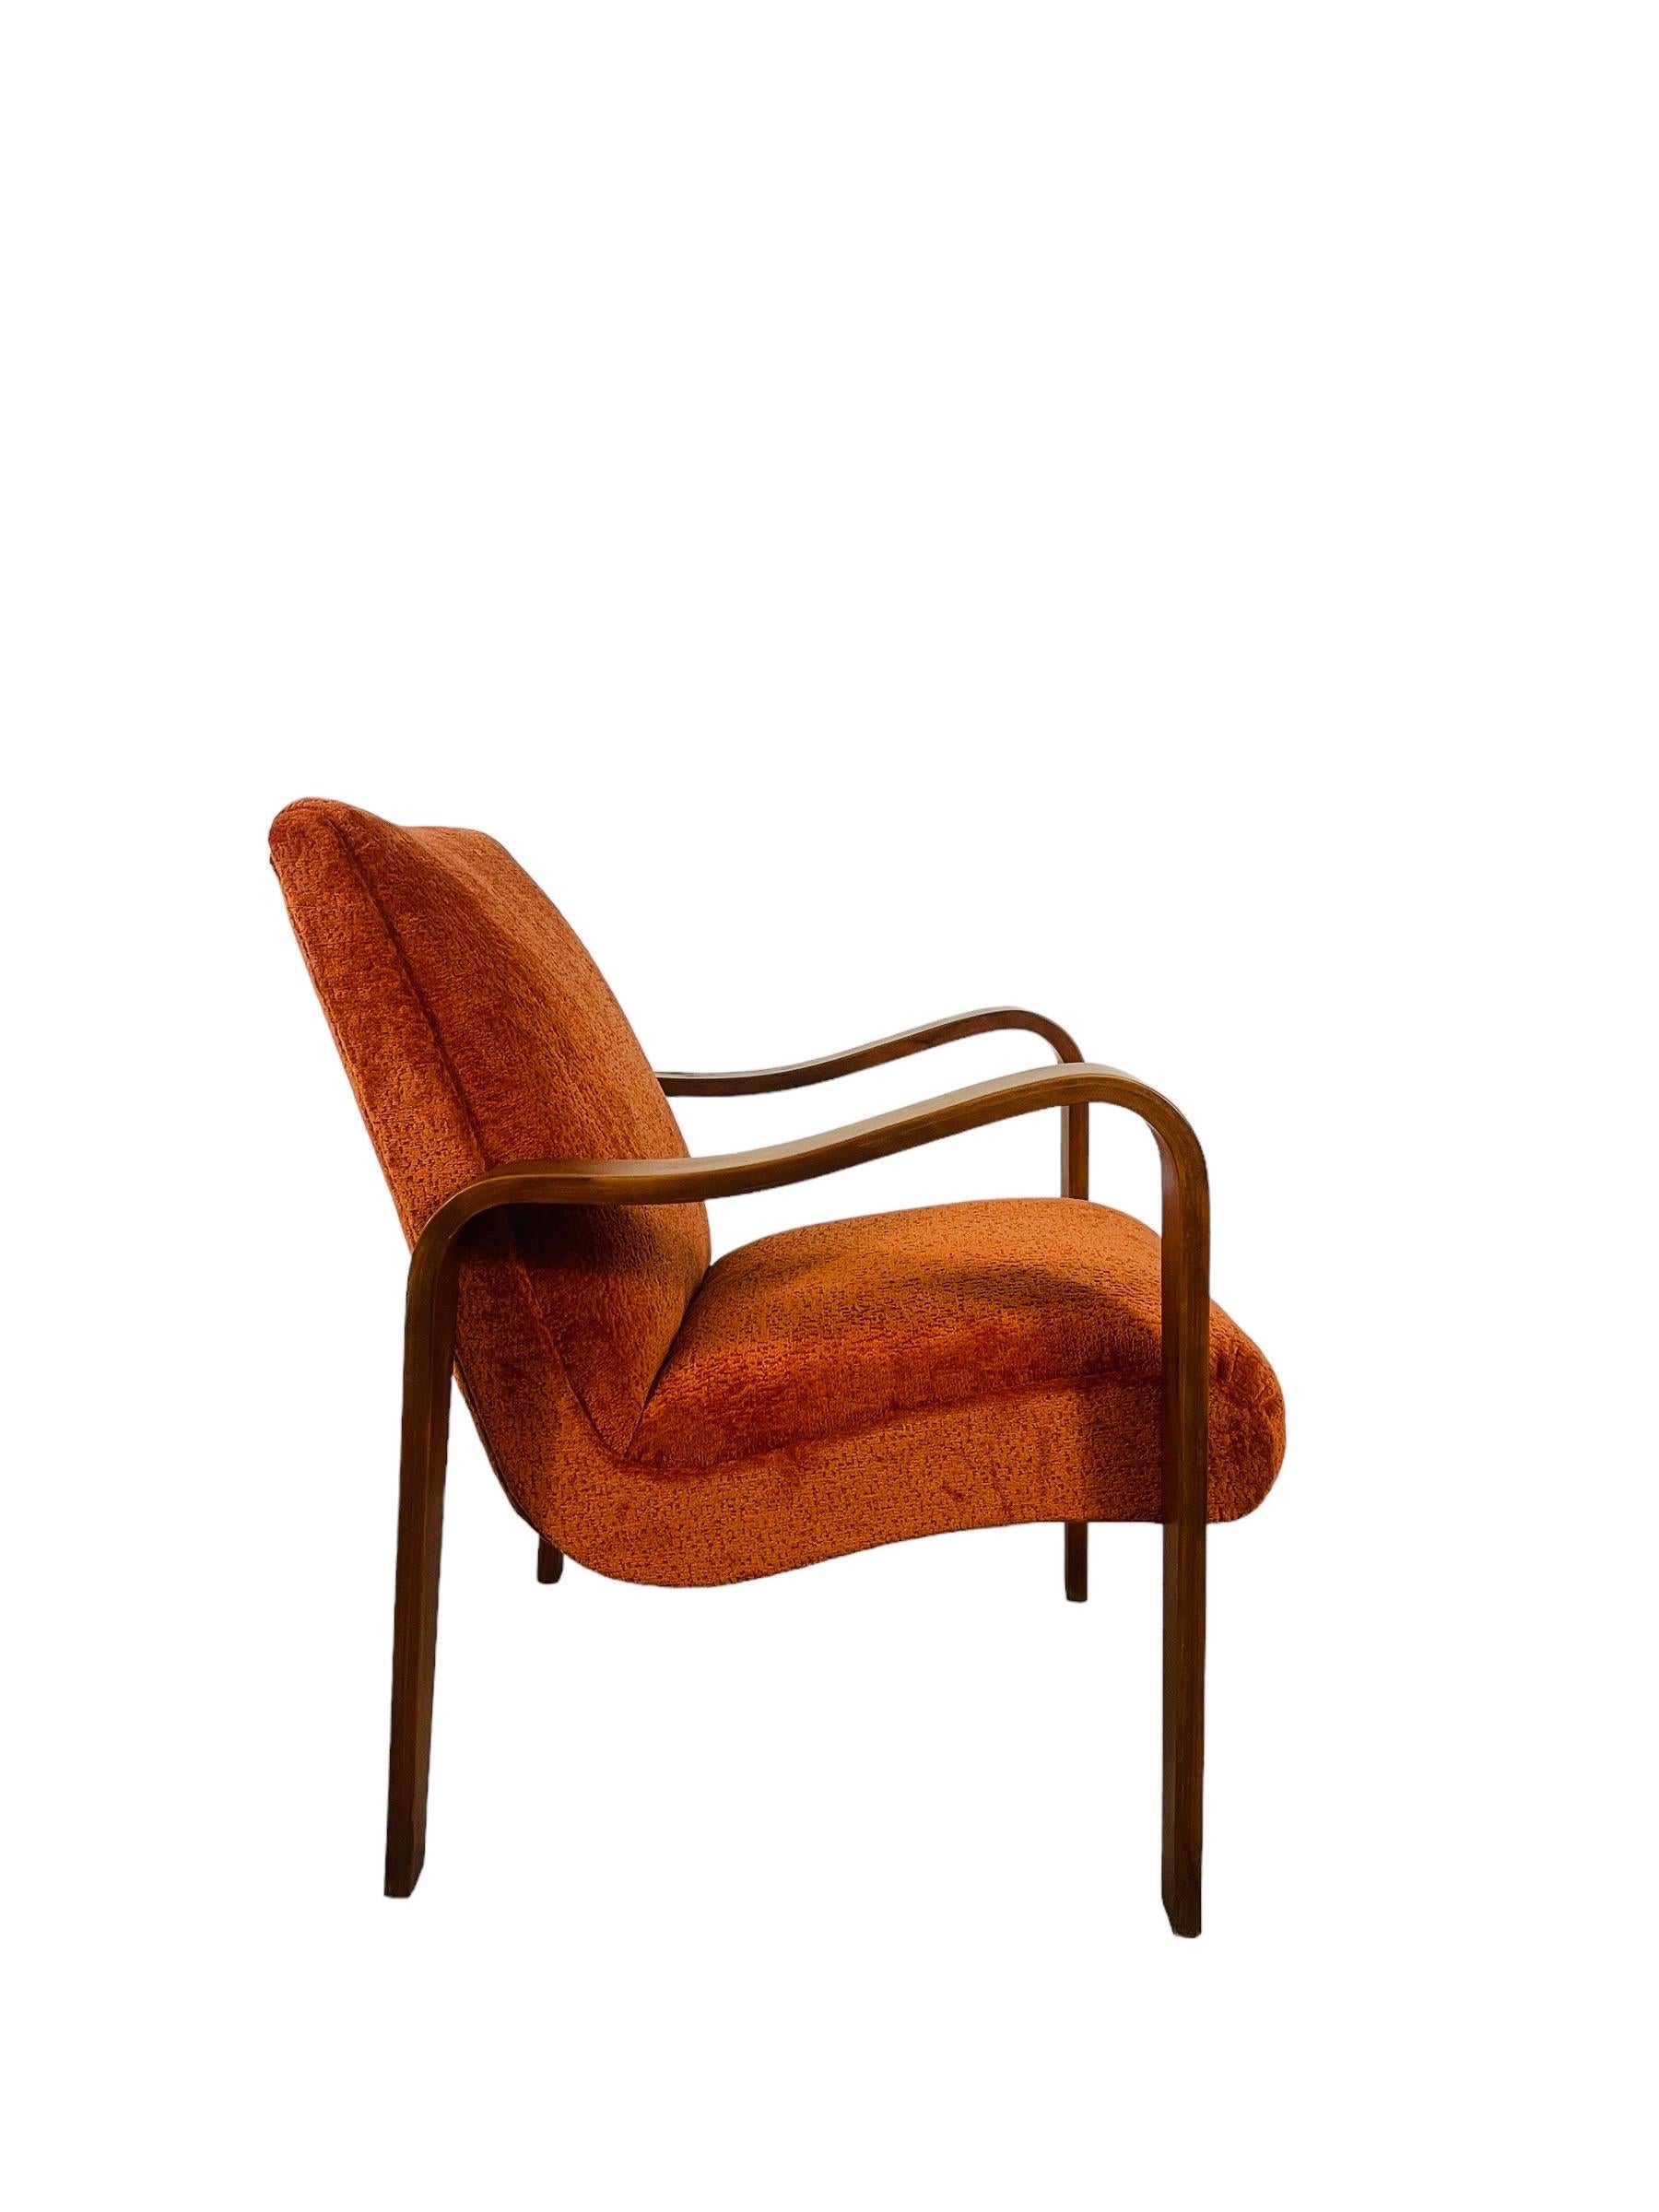 Tauchen Sie ein in die lebendige Umarmung unseres neu gestalteten Thonet Lounge-Sessels, der jetzt in einem üppigen, orangefarbenen Stoff gekleidet ist, der so einladend wie ein warmer Sonnenuntergang ist. Diese Ikone der Mid-Century-Moderne wurde